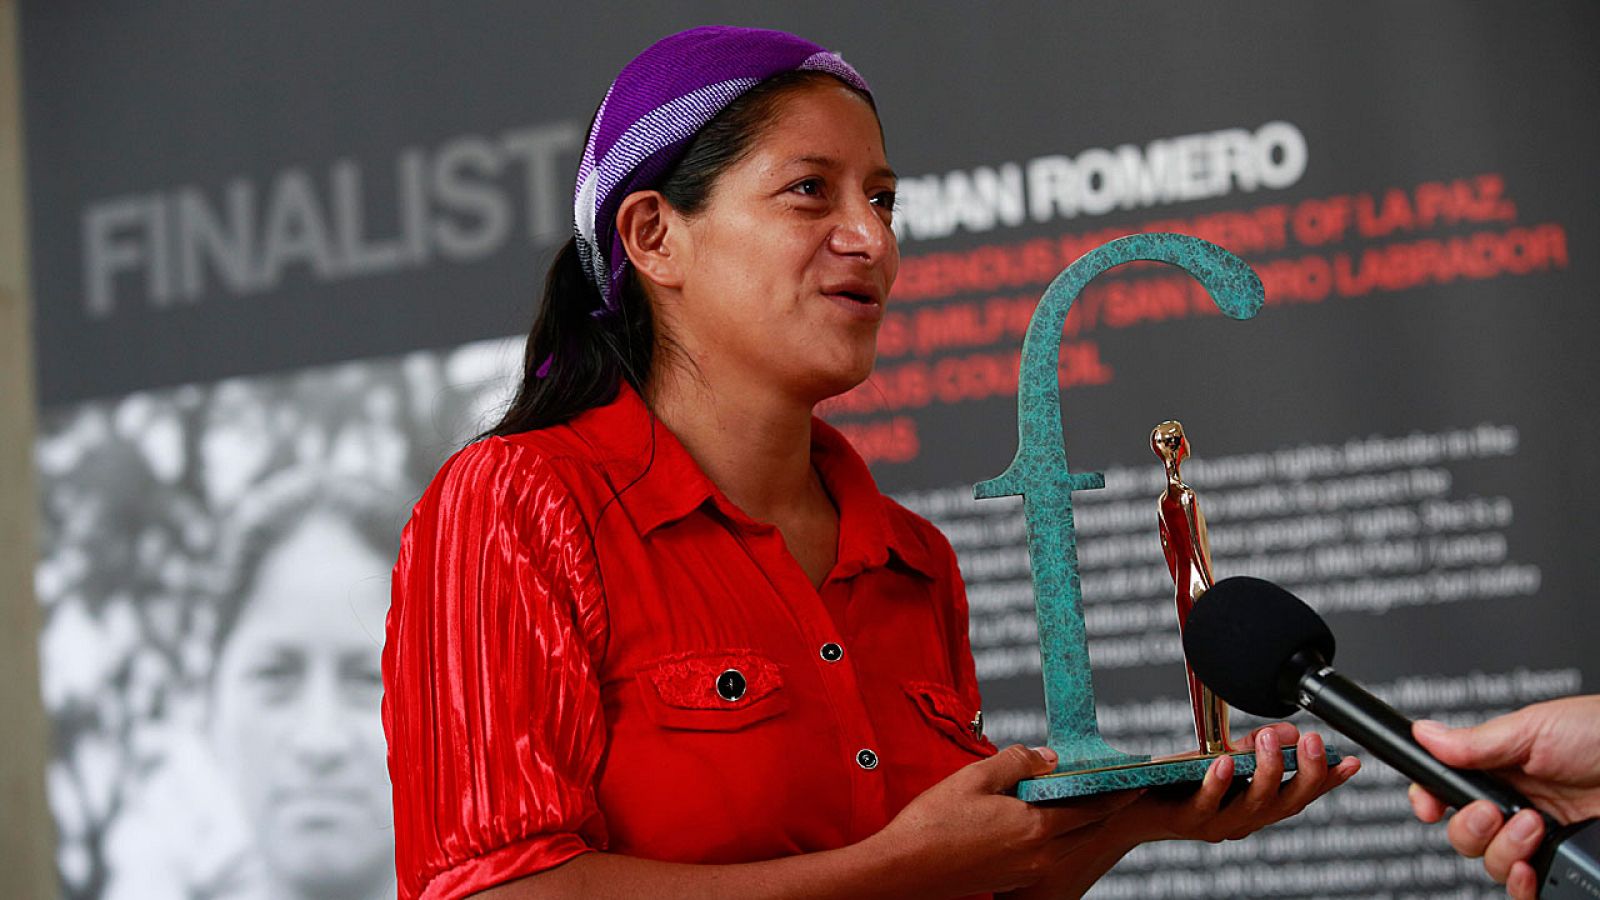 La activista hondureña Ana Mirian Romero recibe el premio "Front Line Defenders".